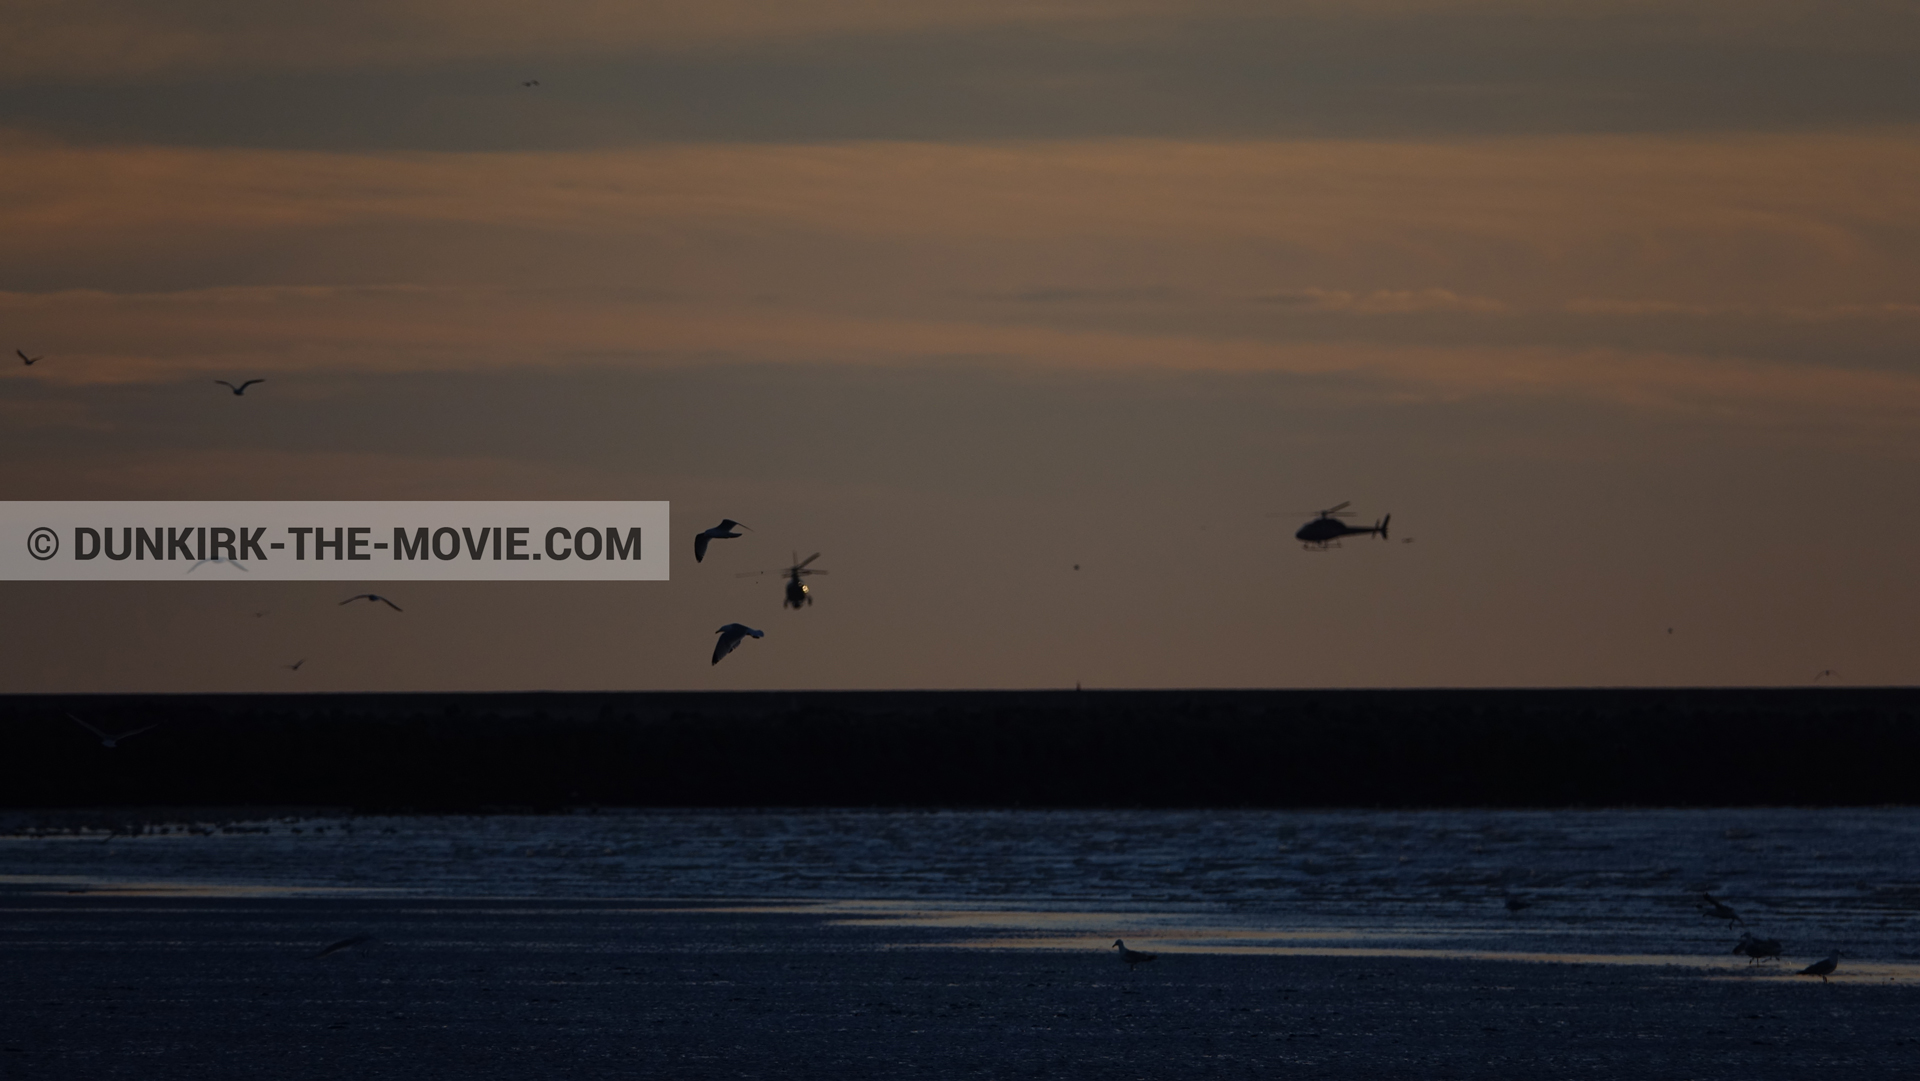 Fotos con cielo anaranjado, cámara helicóptero,  durante el rodaje de la película Dunkerque de Nolan